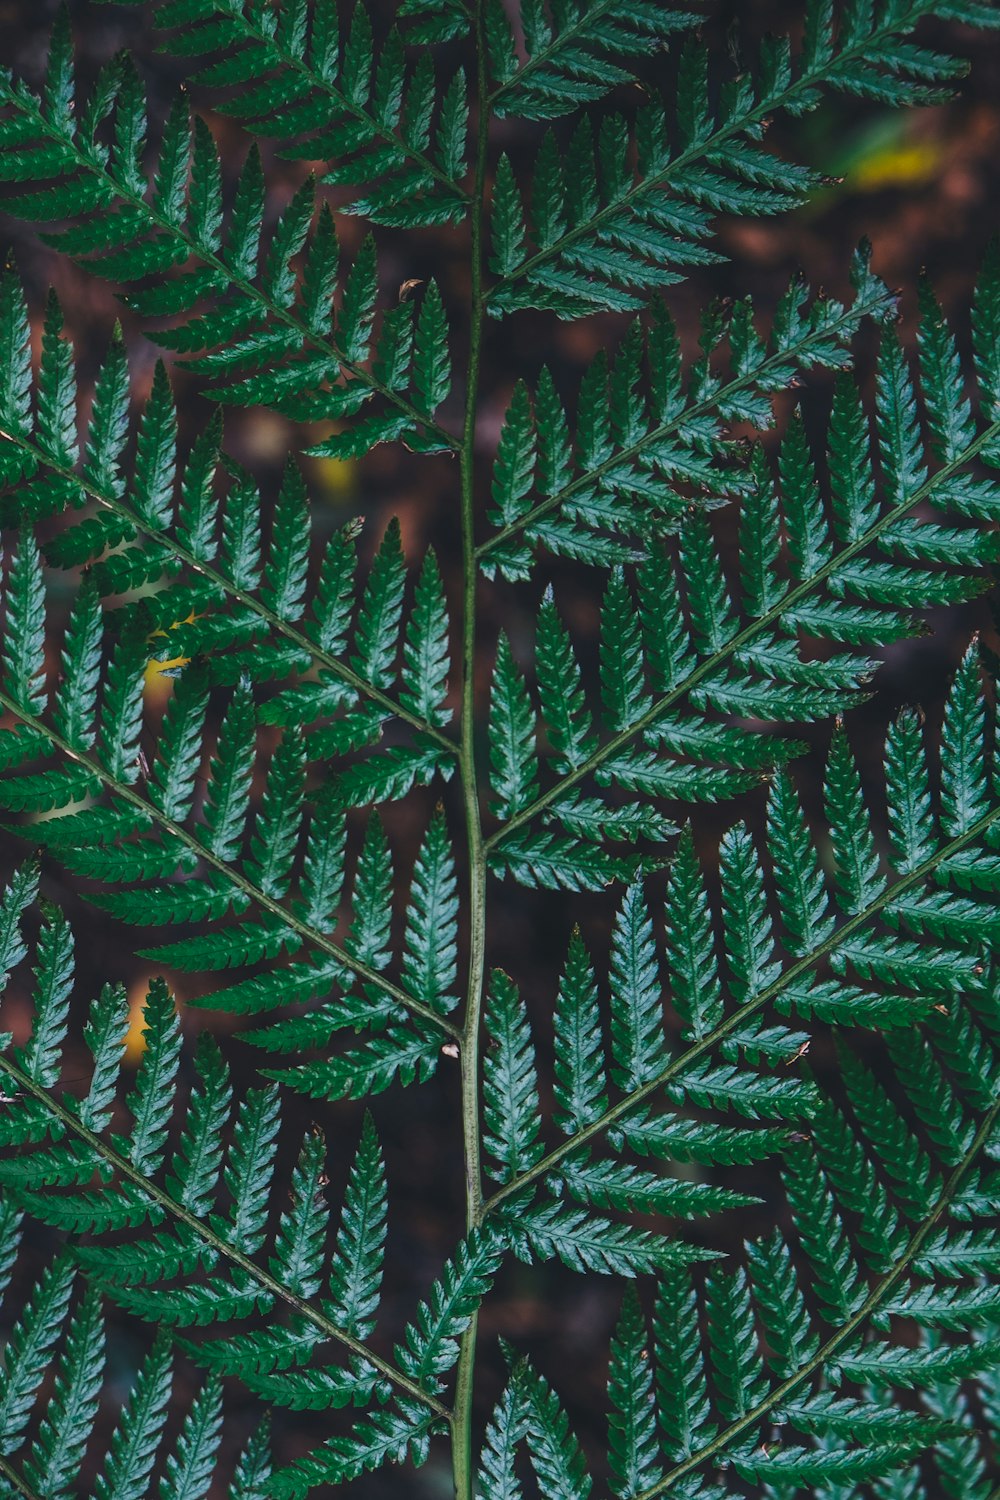 녹색 잎이 있는 식물의 클로즈업 사진